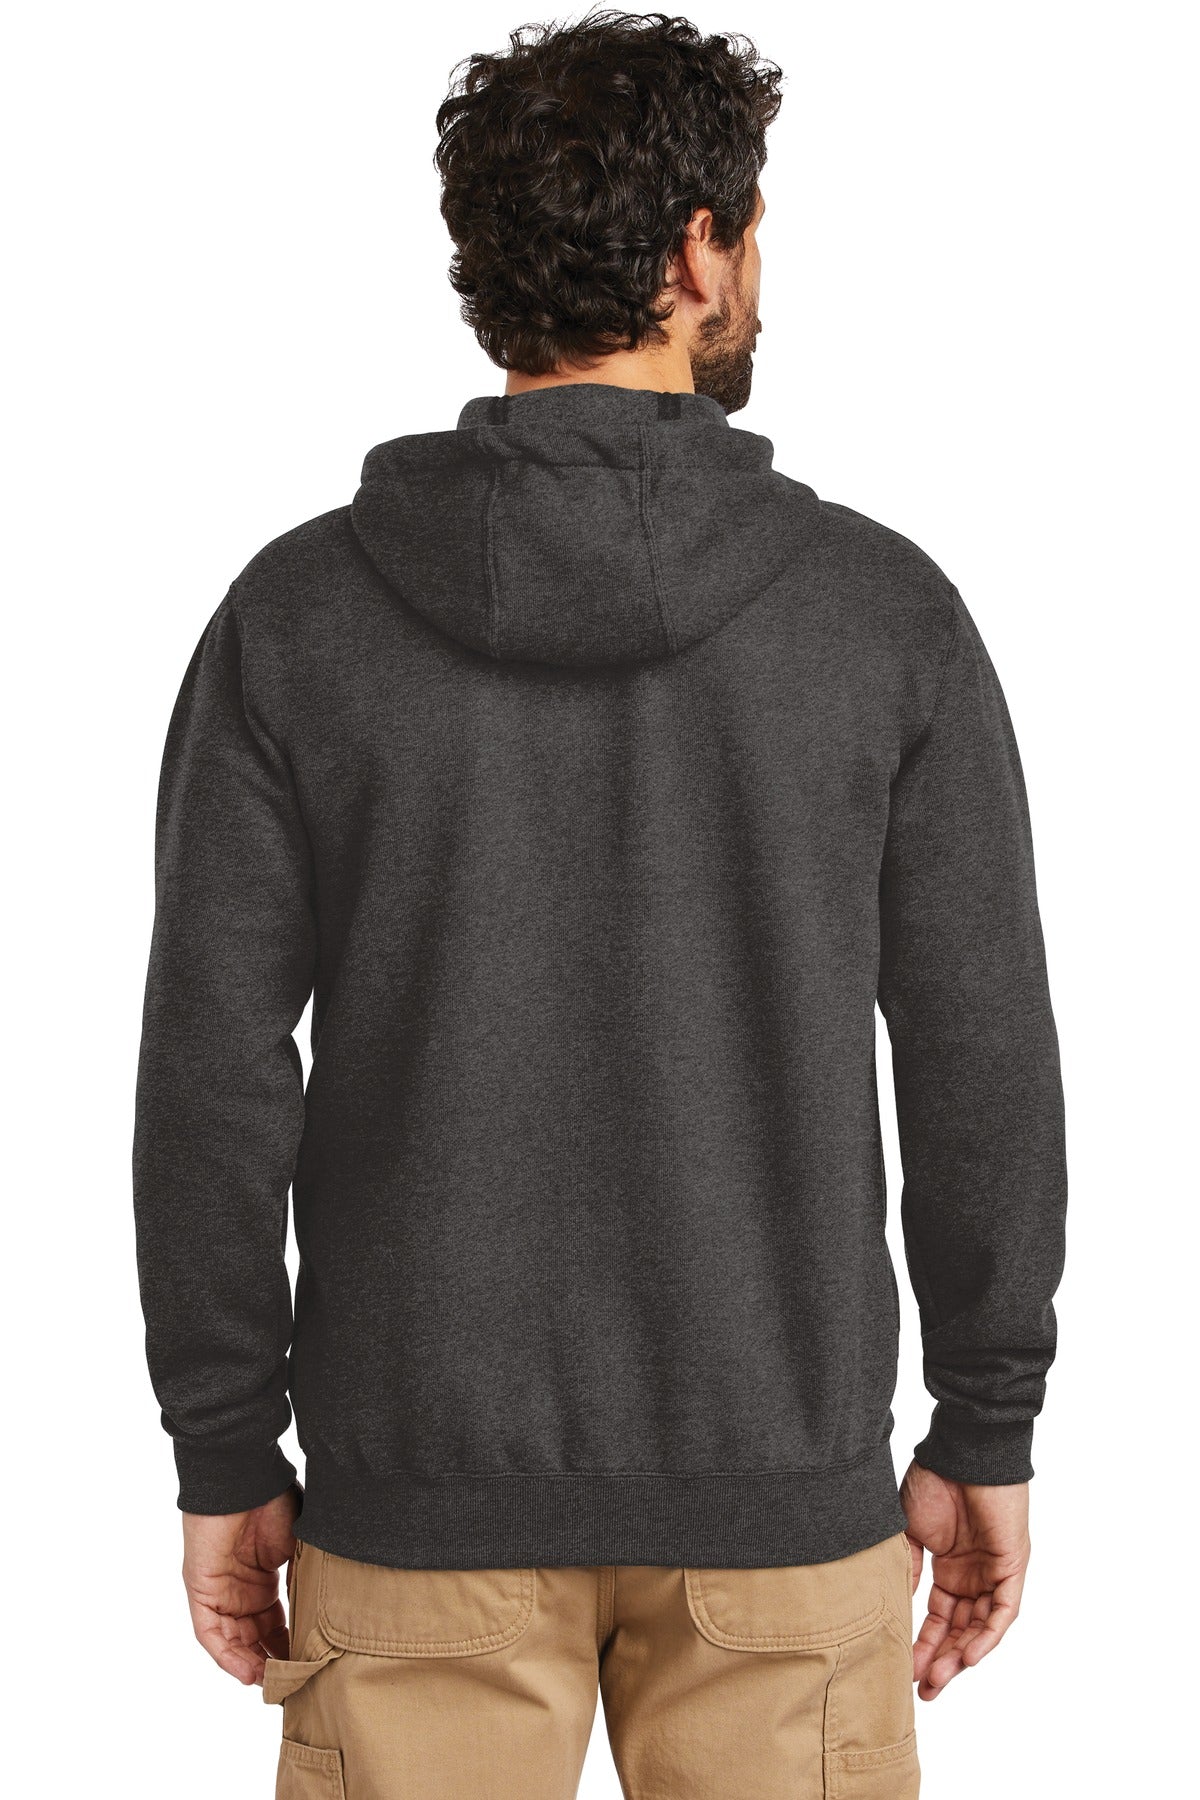 Carhartt Midweight Hooded Zip-Front Sweatshirt. CTK122